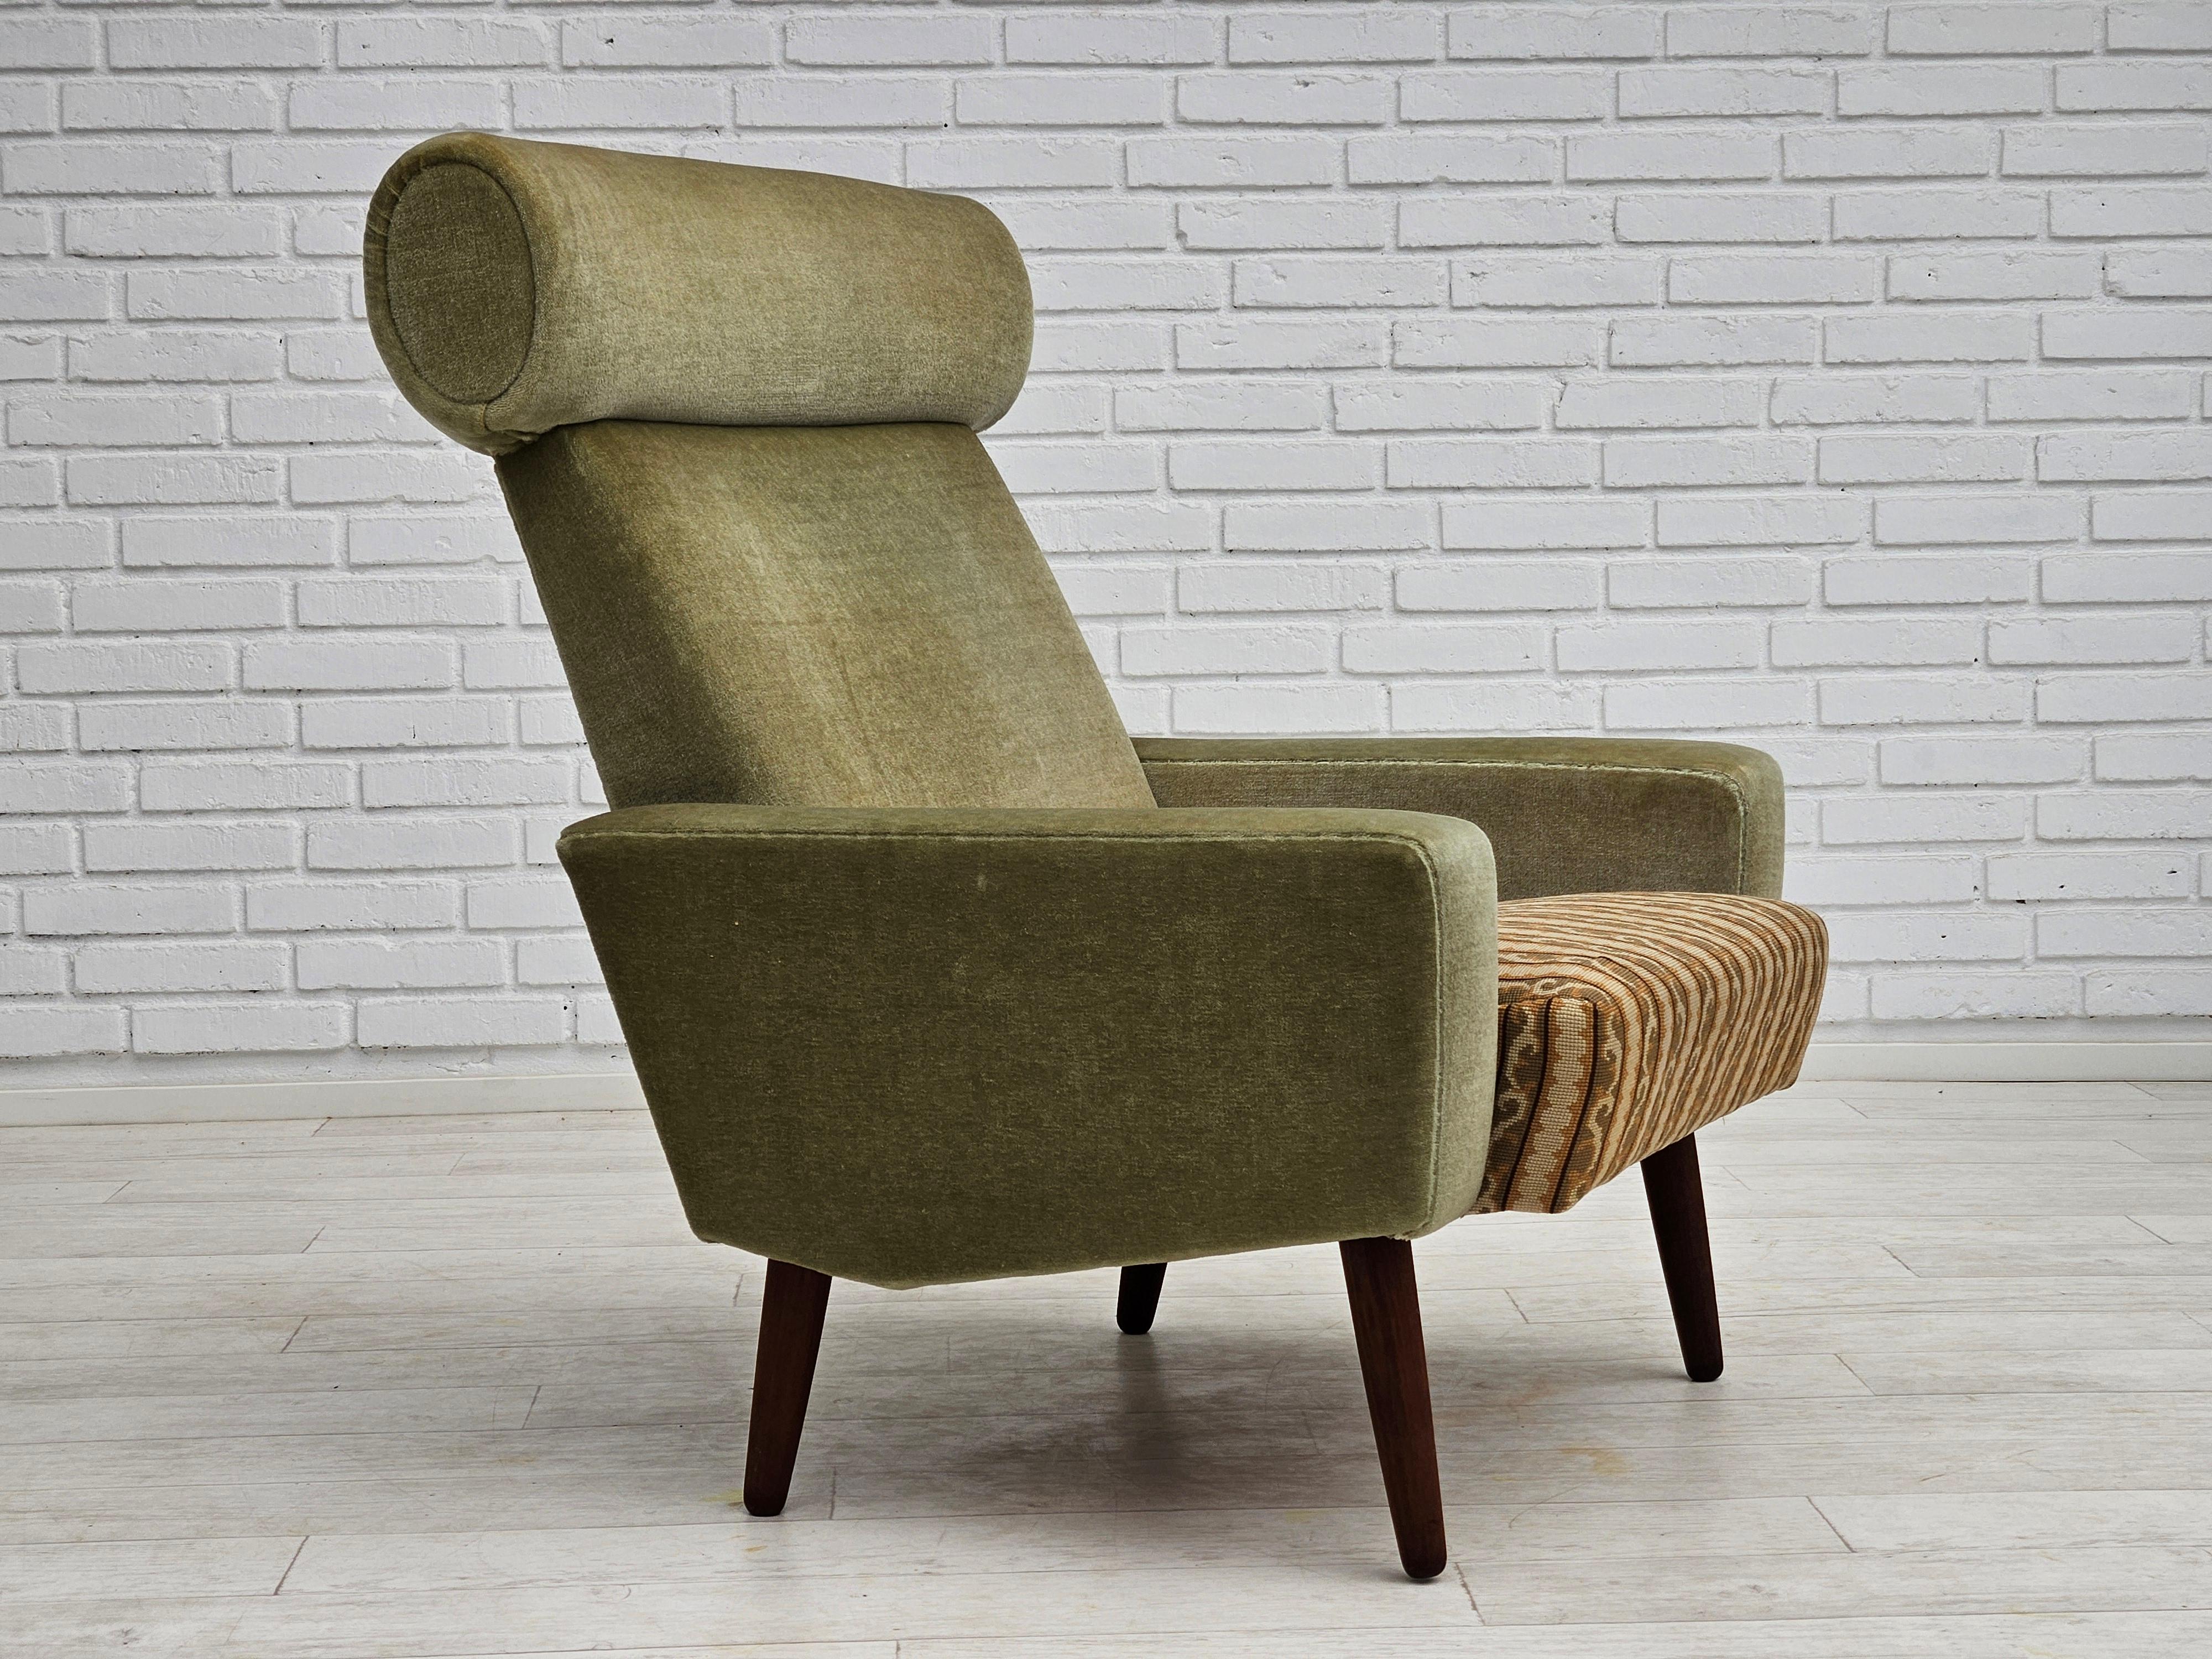 1970er Jahre, dänischer Sessel in sehr gutem Originalzustand: keine Gerüche und keine Flecken. Original hellgrüner Möbelvelours, gewebter Wollstoff auf der Sitzfläche. Beine aus Teakholz, Federn in der Sitzfläche. Hergestellt von einem dänischen